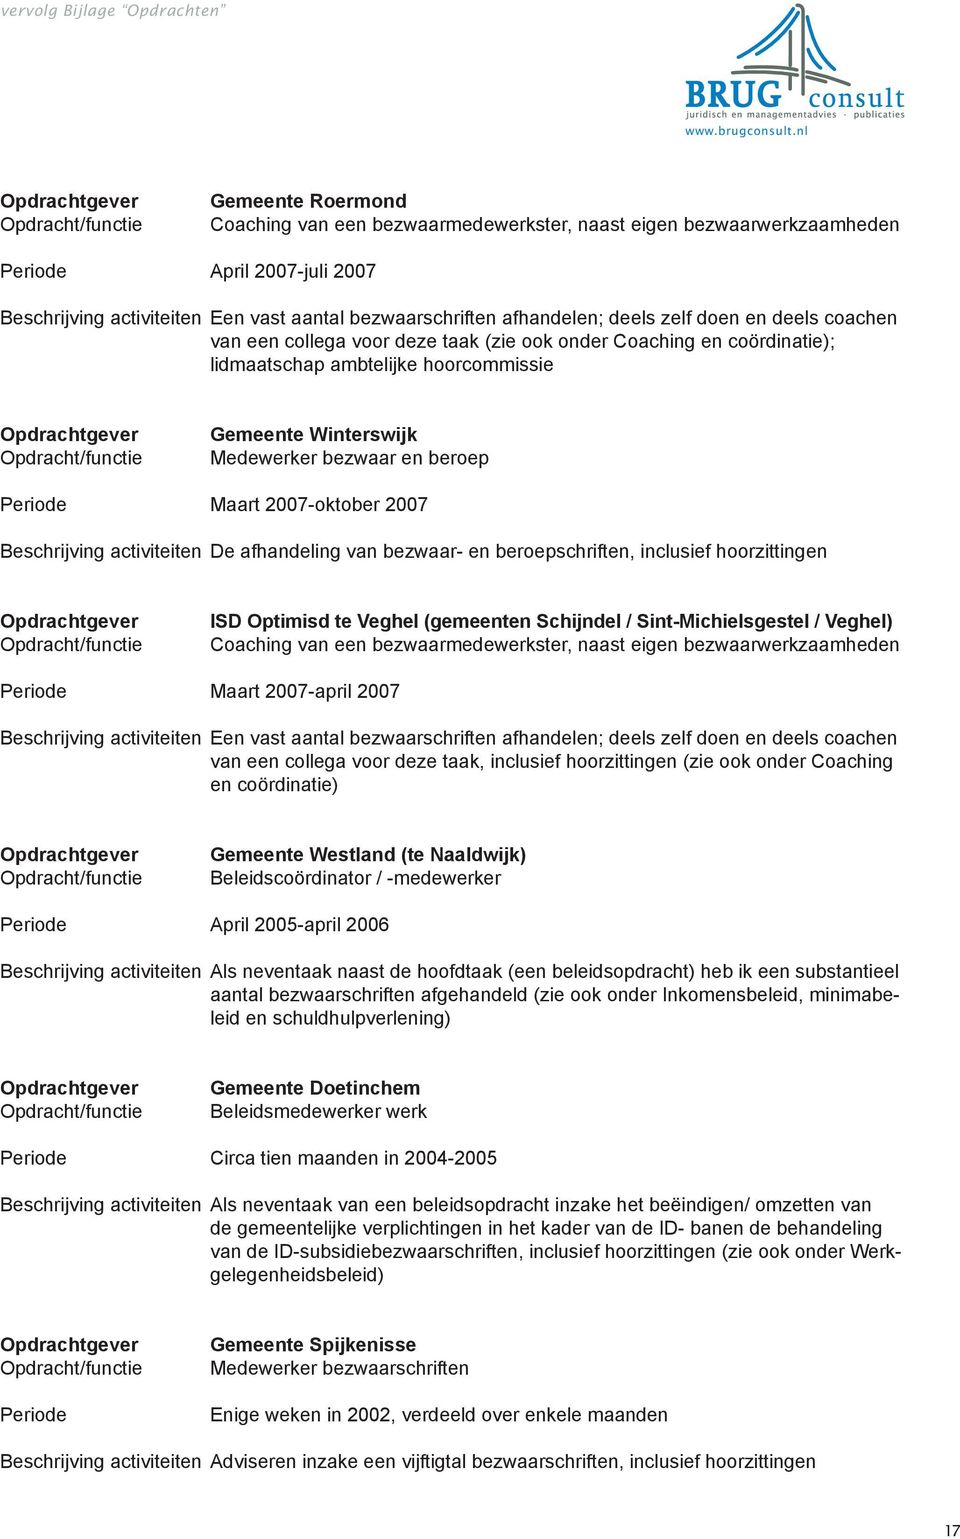 2007-oktober 2007 Beschrijving activiteiten De afhandeling van bezwaar- en beroepschriften, inclusief hoorzittingen ISD Optimisd te Veghel (gemeenten Schijndel / Sint-Michielsgestel / Veghel)